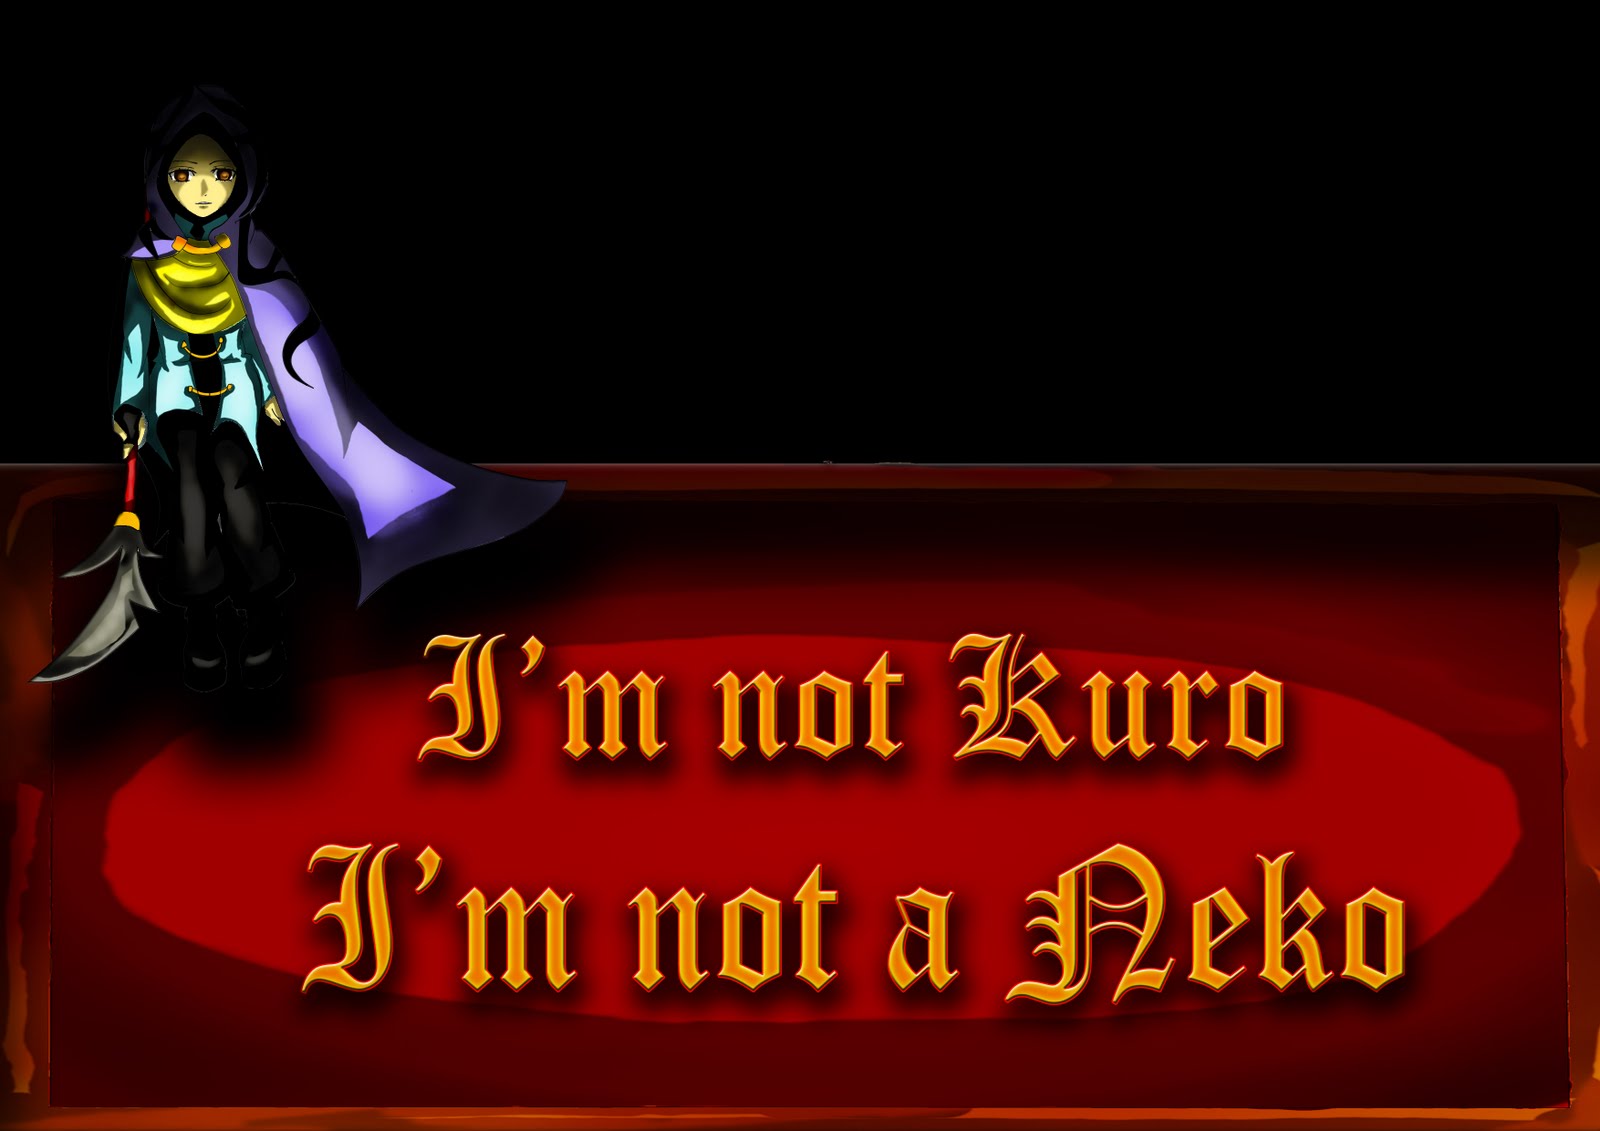 I'm Not 'Kuro' and I'm Not A 'Neko'